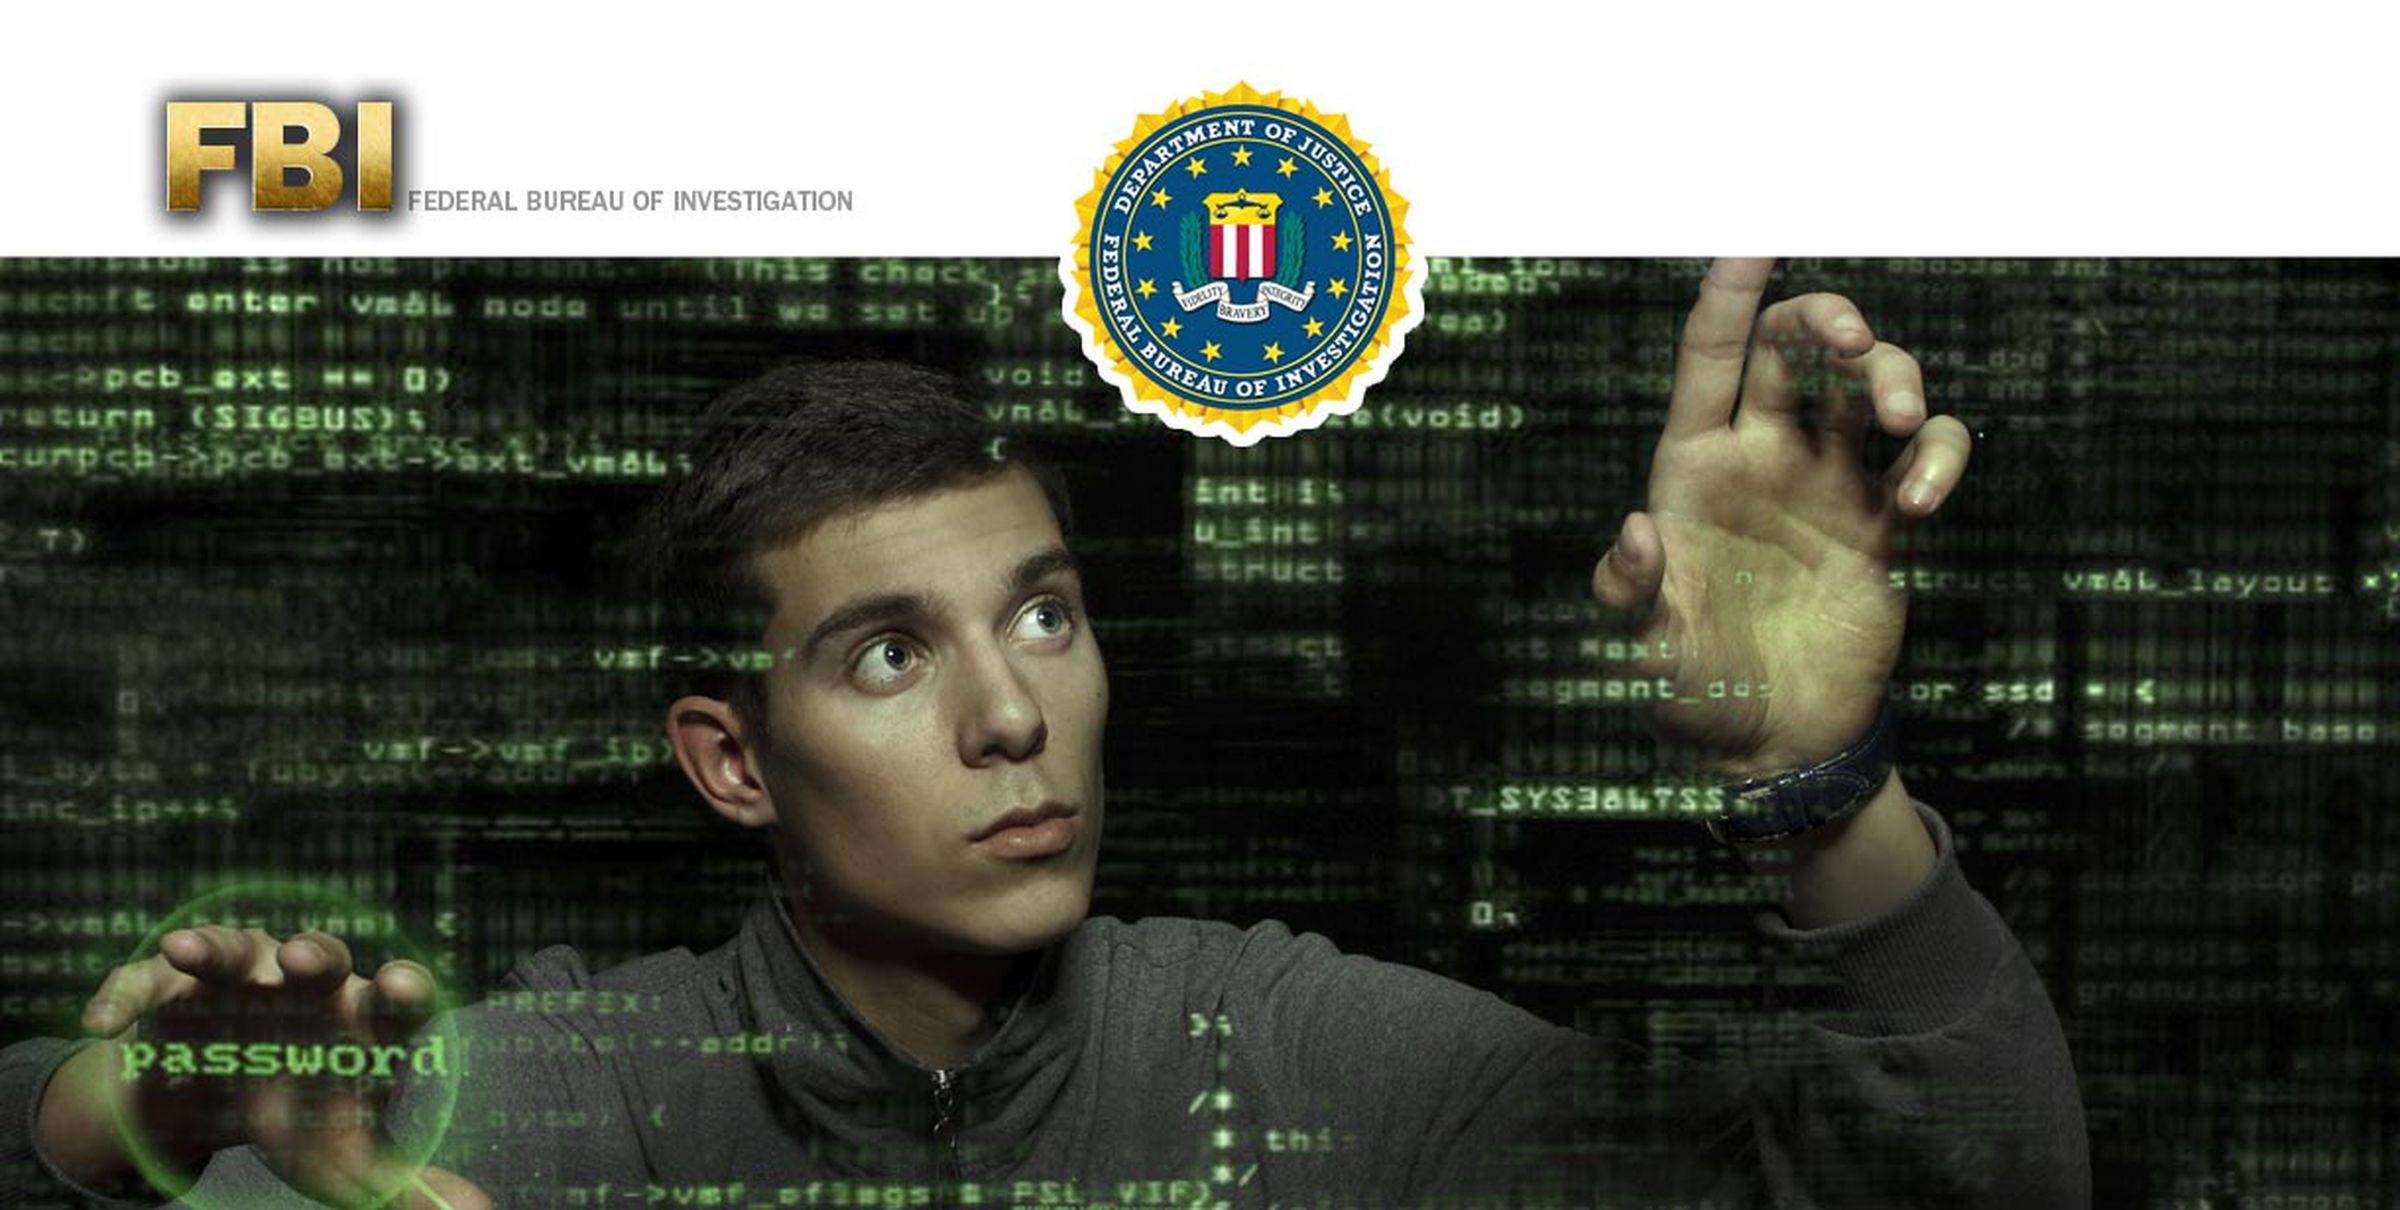 FBI cyberspace